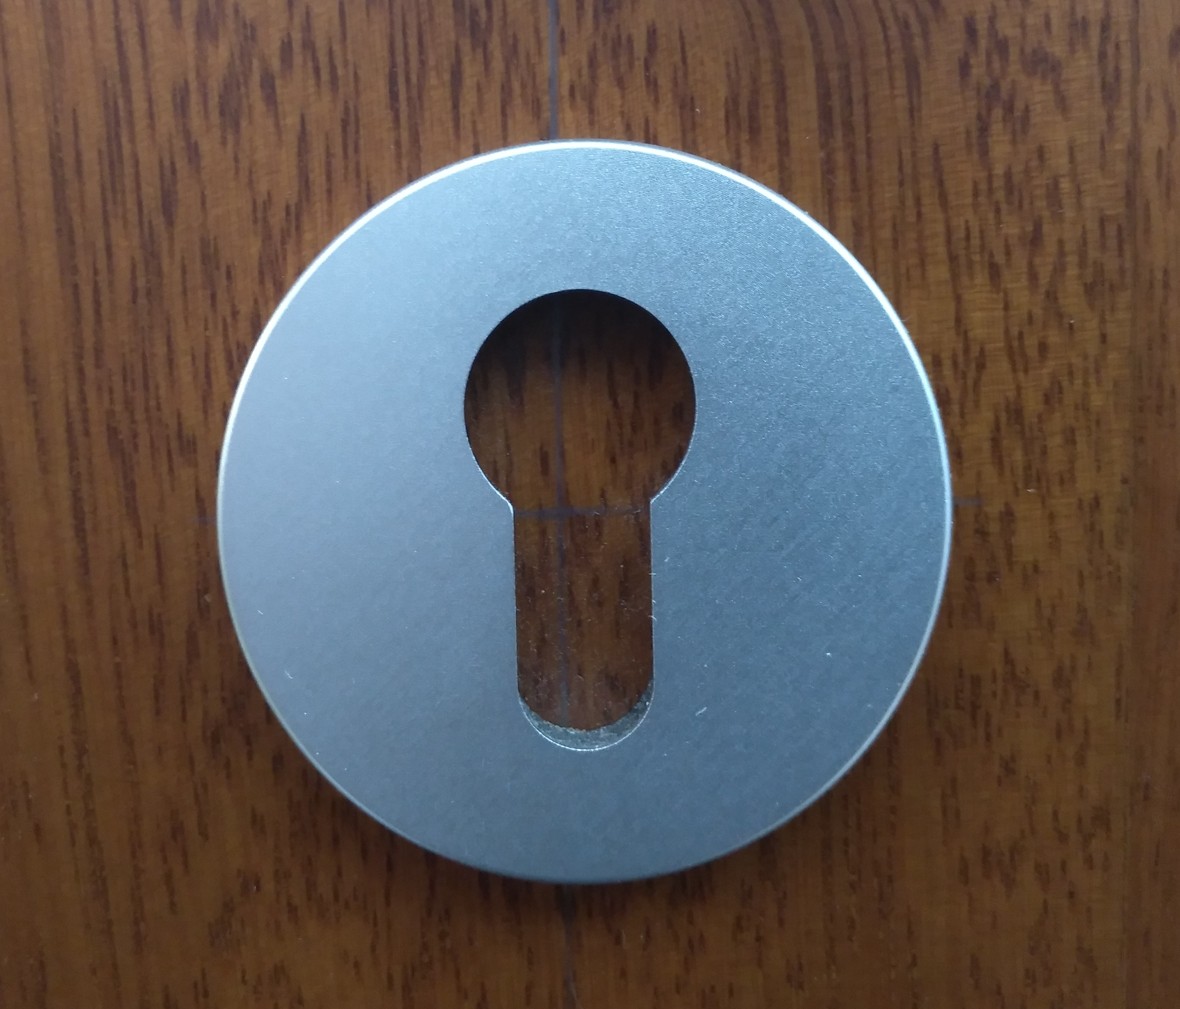 晾霸五金 米开朗72-68型号门锁 铝合金材质 优质门锁 细节